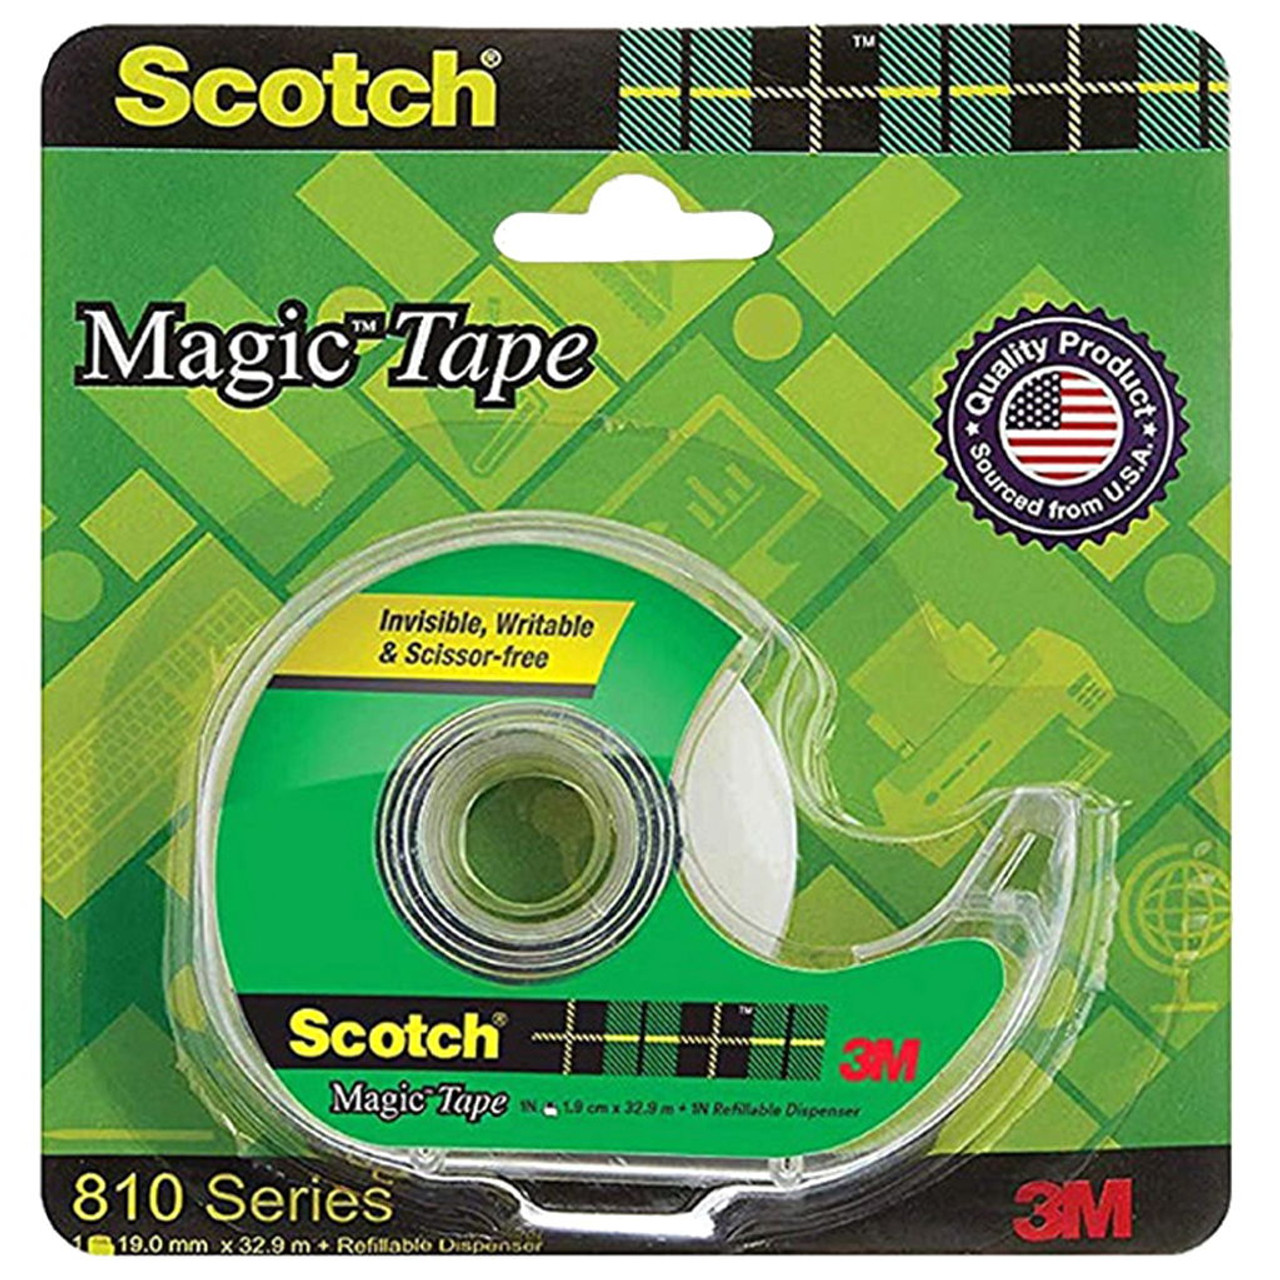 Scotch Magic Tape with Dispenser - FLAX art & design